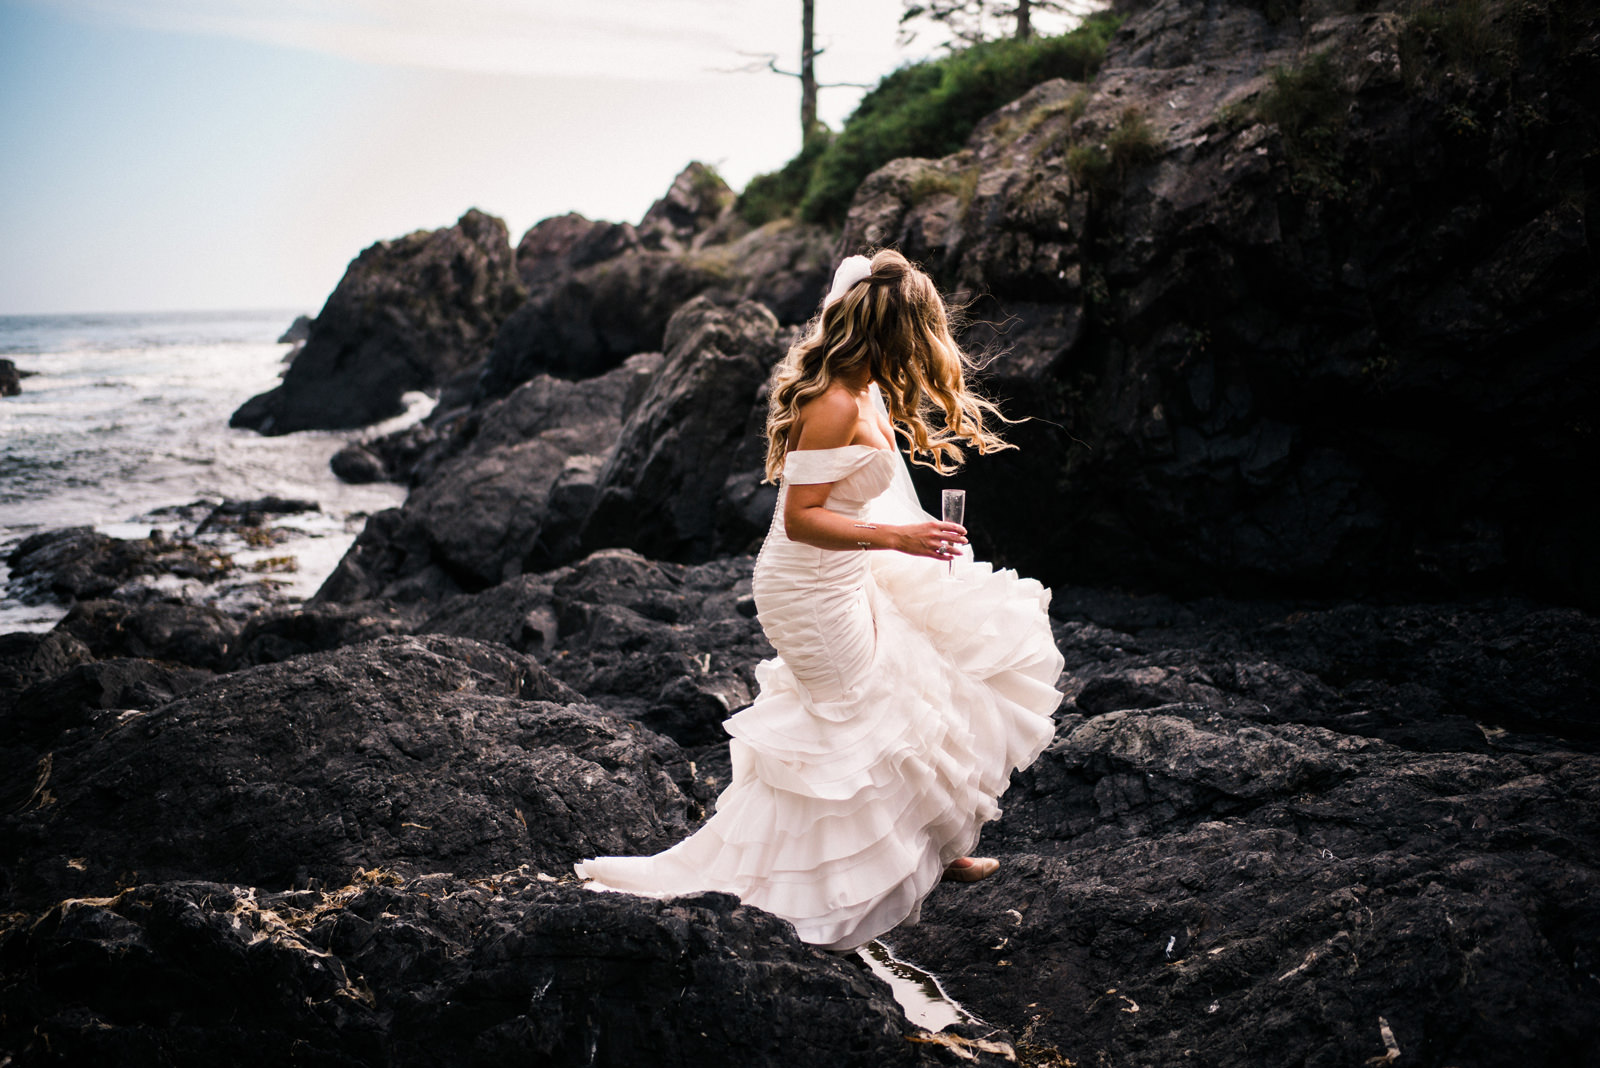 199-pnw-bride-walking-on-a-rocky-beach-by-tofino-wedding-photographer-ryan-flynn.jpg